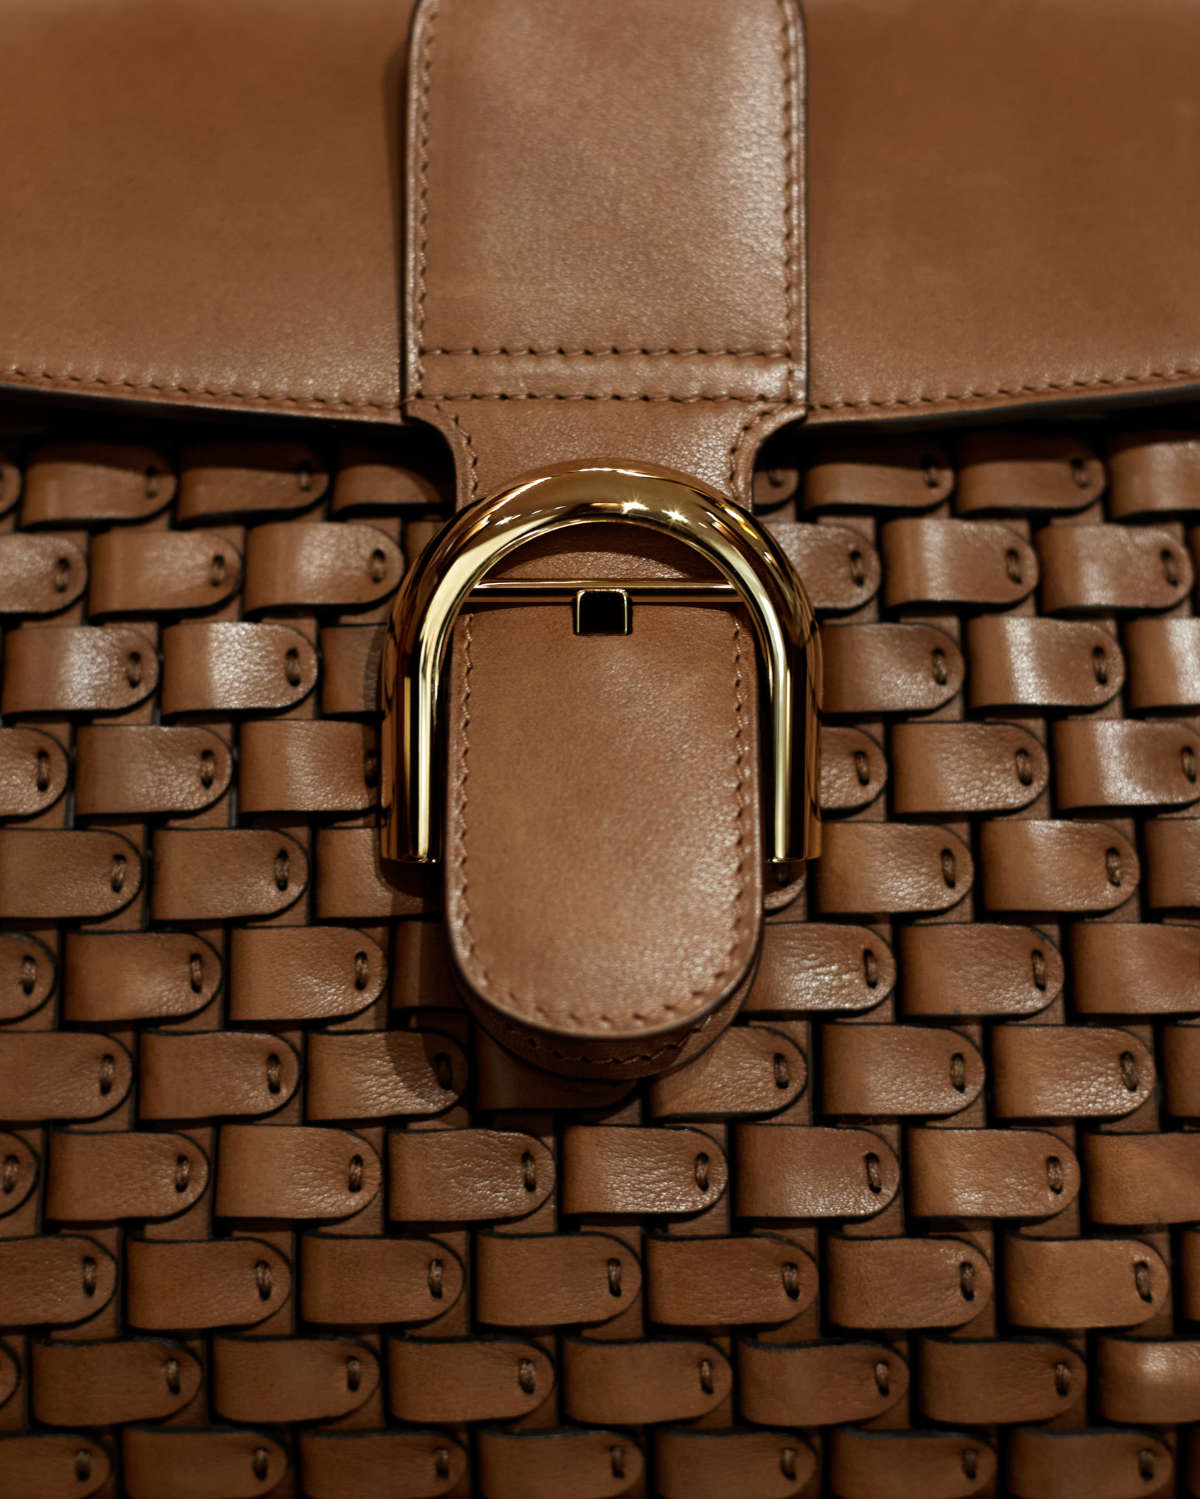 Shop DELVAUX Lingot 2022-23FW Leather Shoulder Bags by 5etoiles